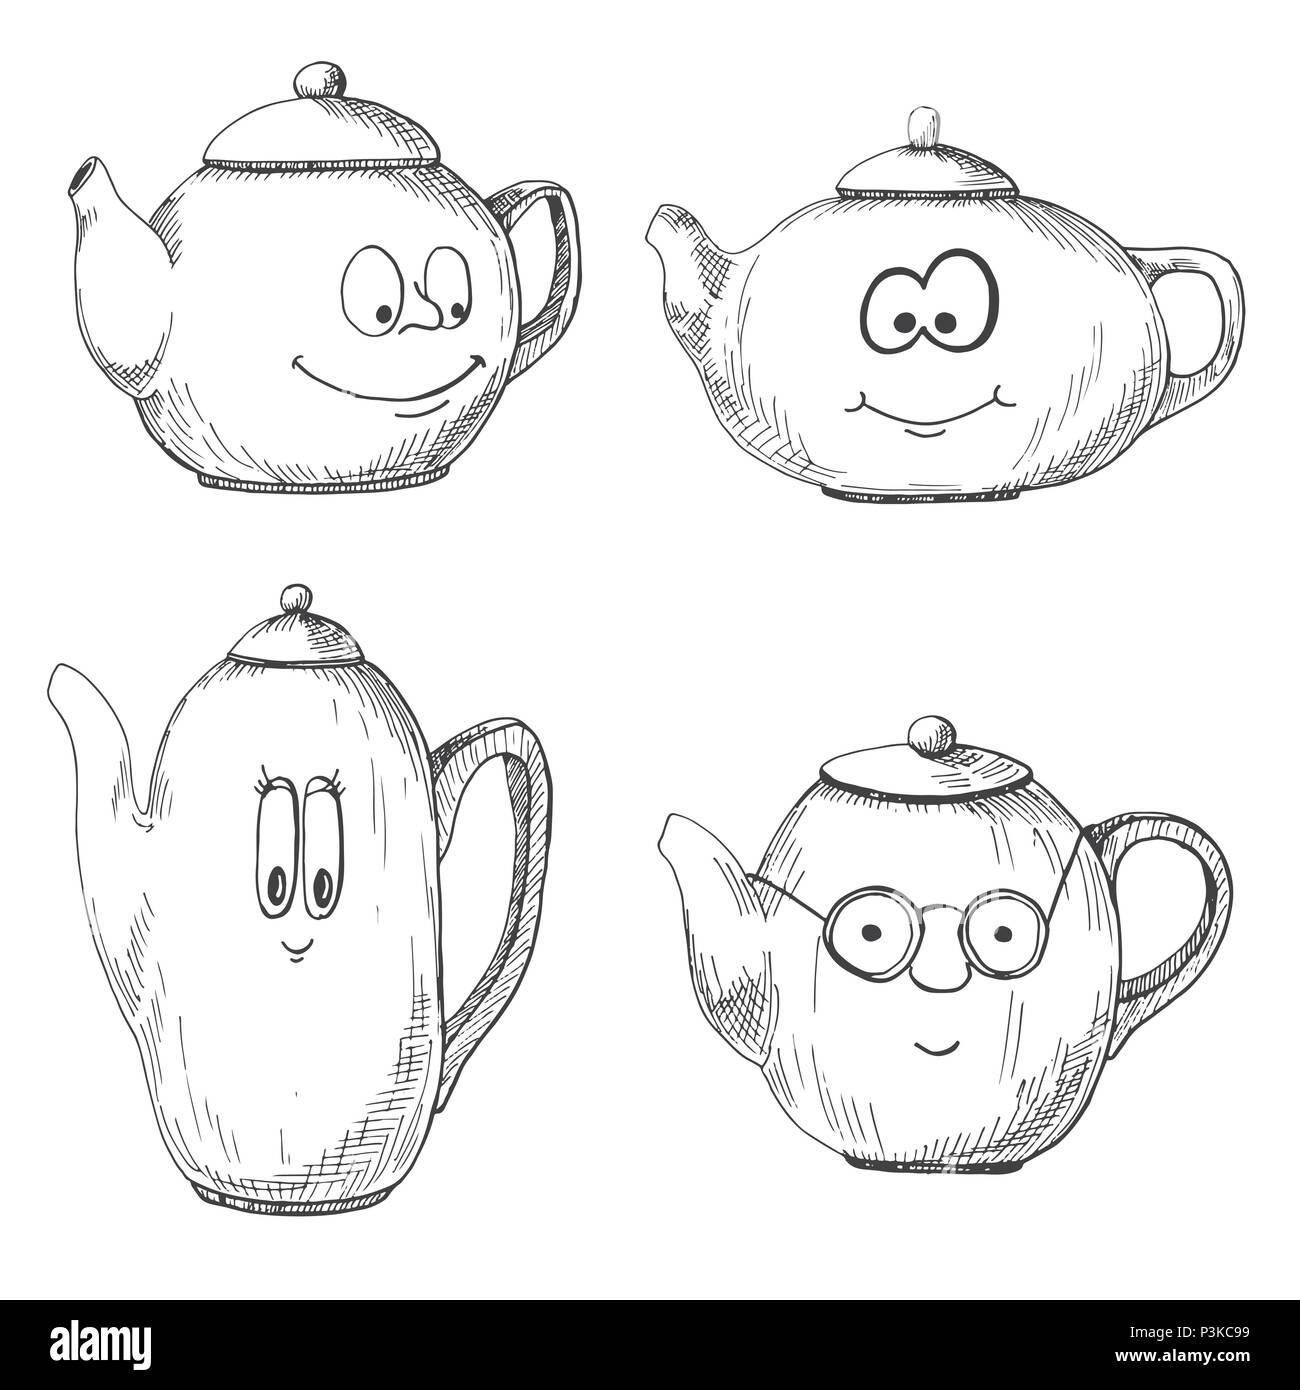 Kawaii Tea Kettle Icon Cartoon Illustration Isolated White Stock Vector by  ©Mictoon 395705720